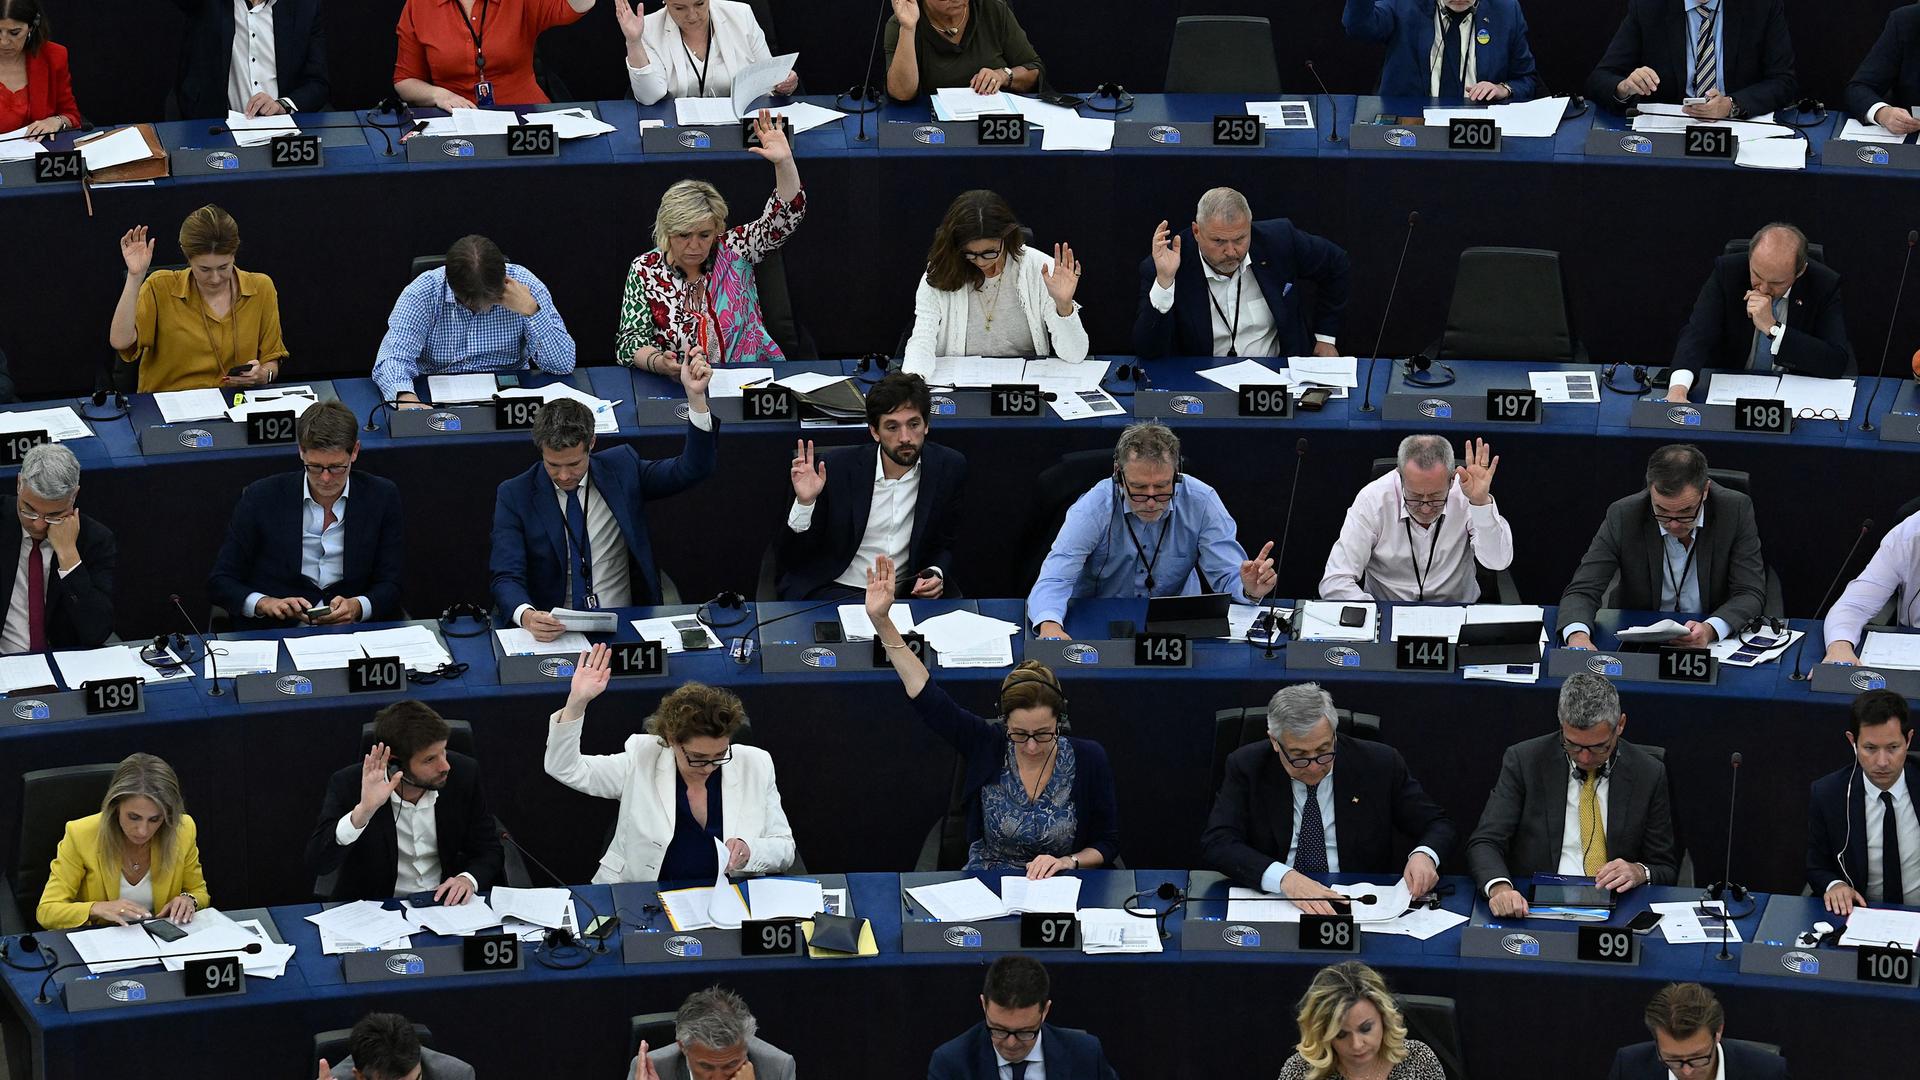 Viele der Mitglieder des Europa-Parlaments heben die Hände zur Abstimmung.